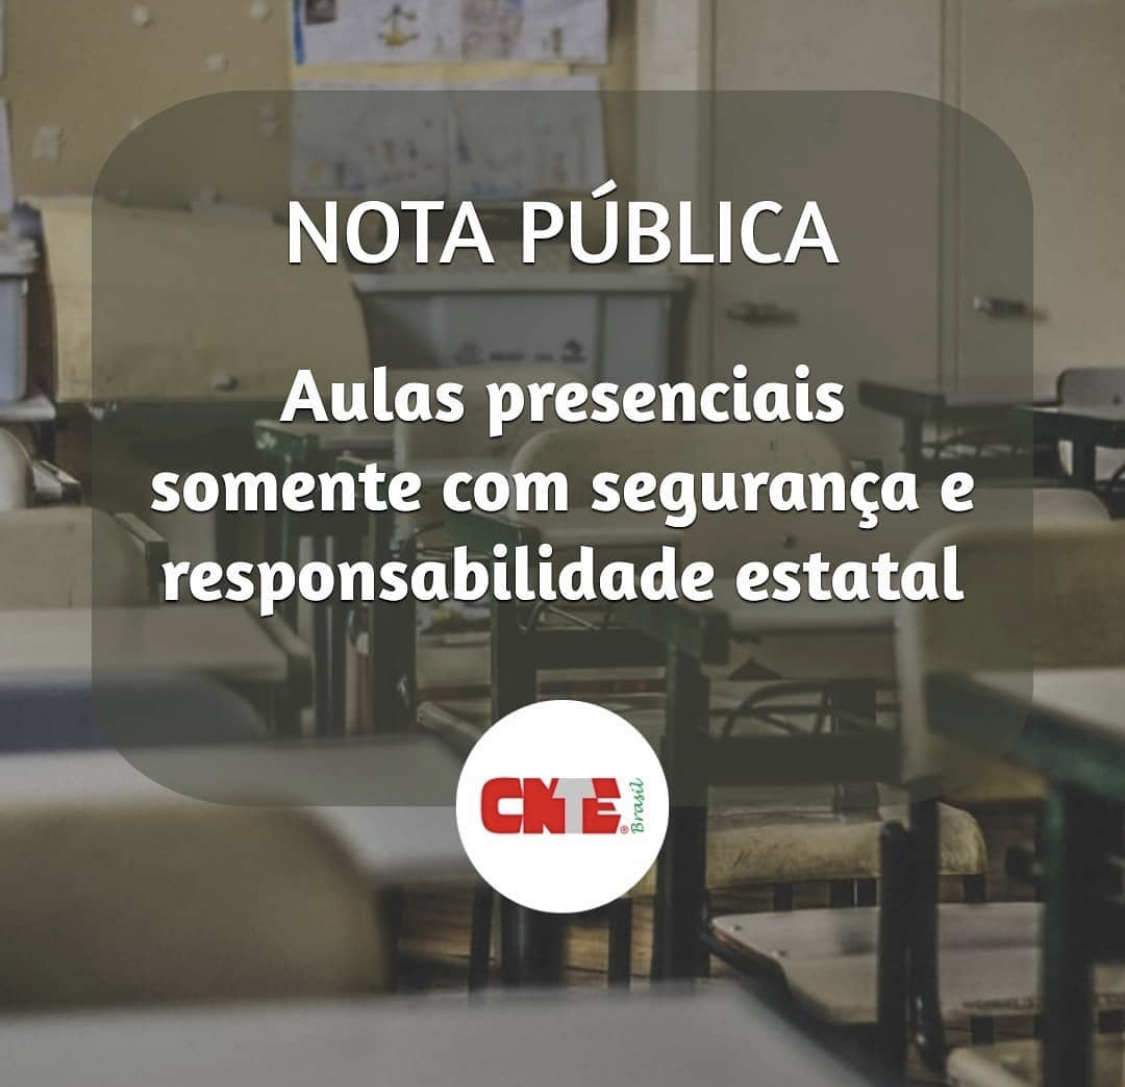 CNTE – EM DEFESA DA VIDA – Aulas presenciais somente com segurança e responsabilidade estatal